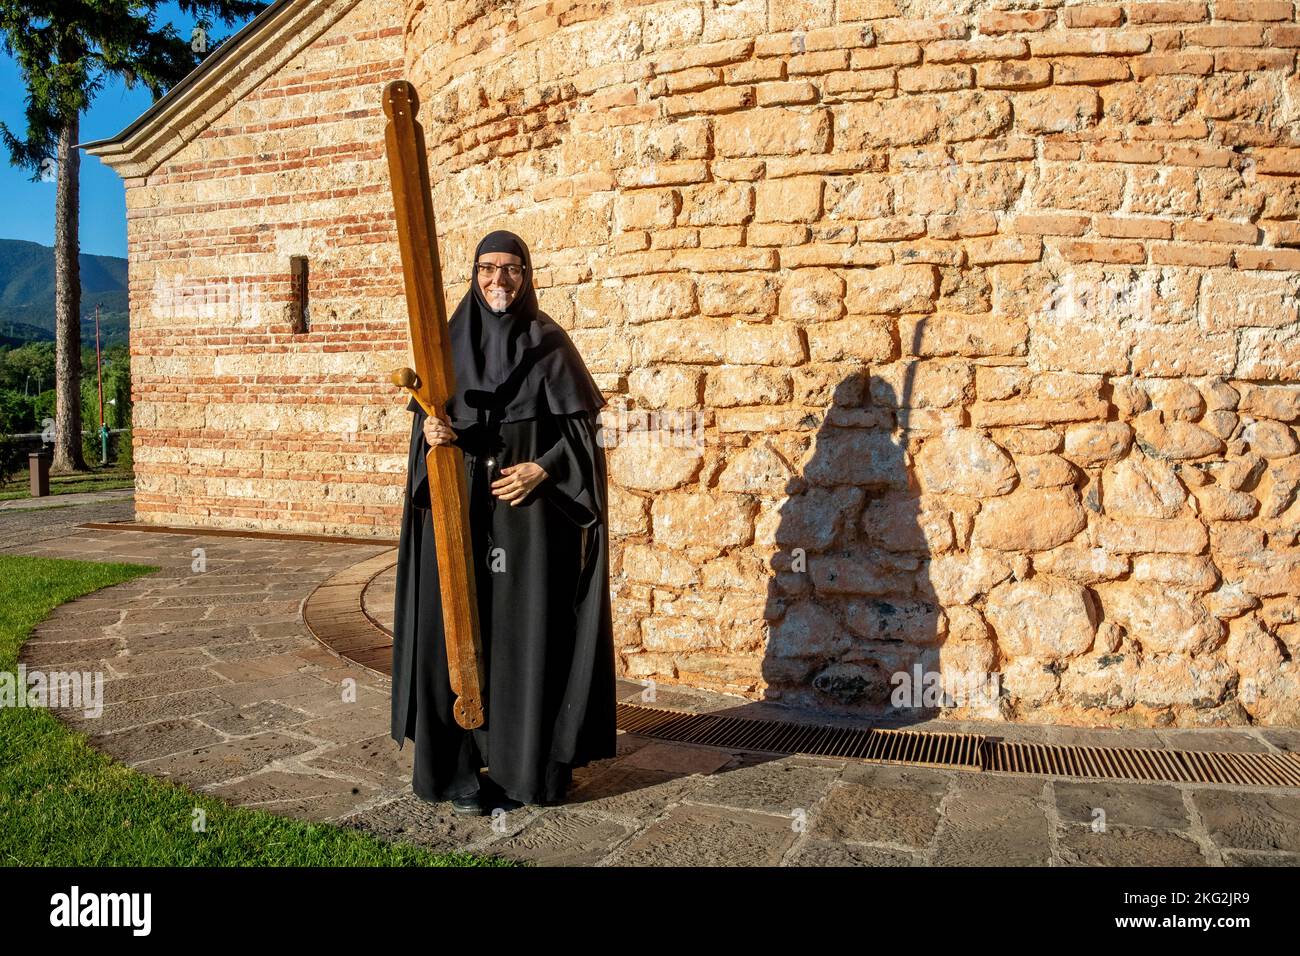 Orthodoxes Kloster Zica in der Nähe von Kraljevo, Serbien. Nonne ruft zu einer Morgenfeier Stockfoto